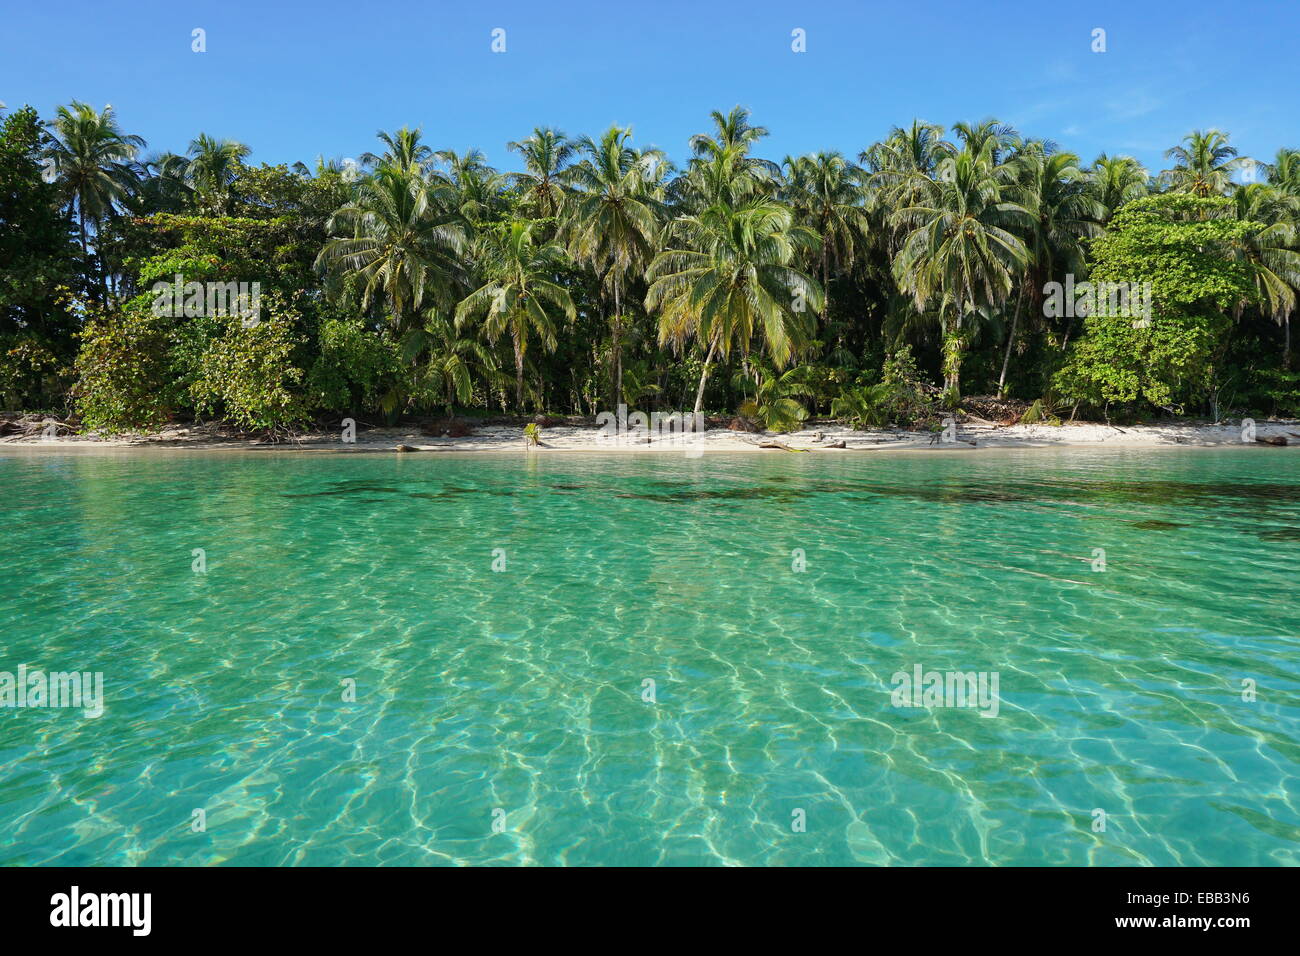 Plage des Caraïbes Pacifique de végétation tropicale et d'eau claire vue de la mer, îles Zapatilla, Bocas del Toro, PANAMA Banque D'Images